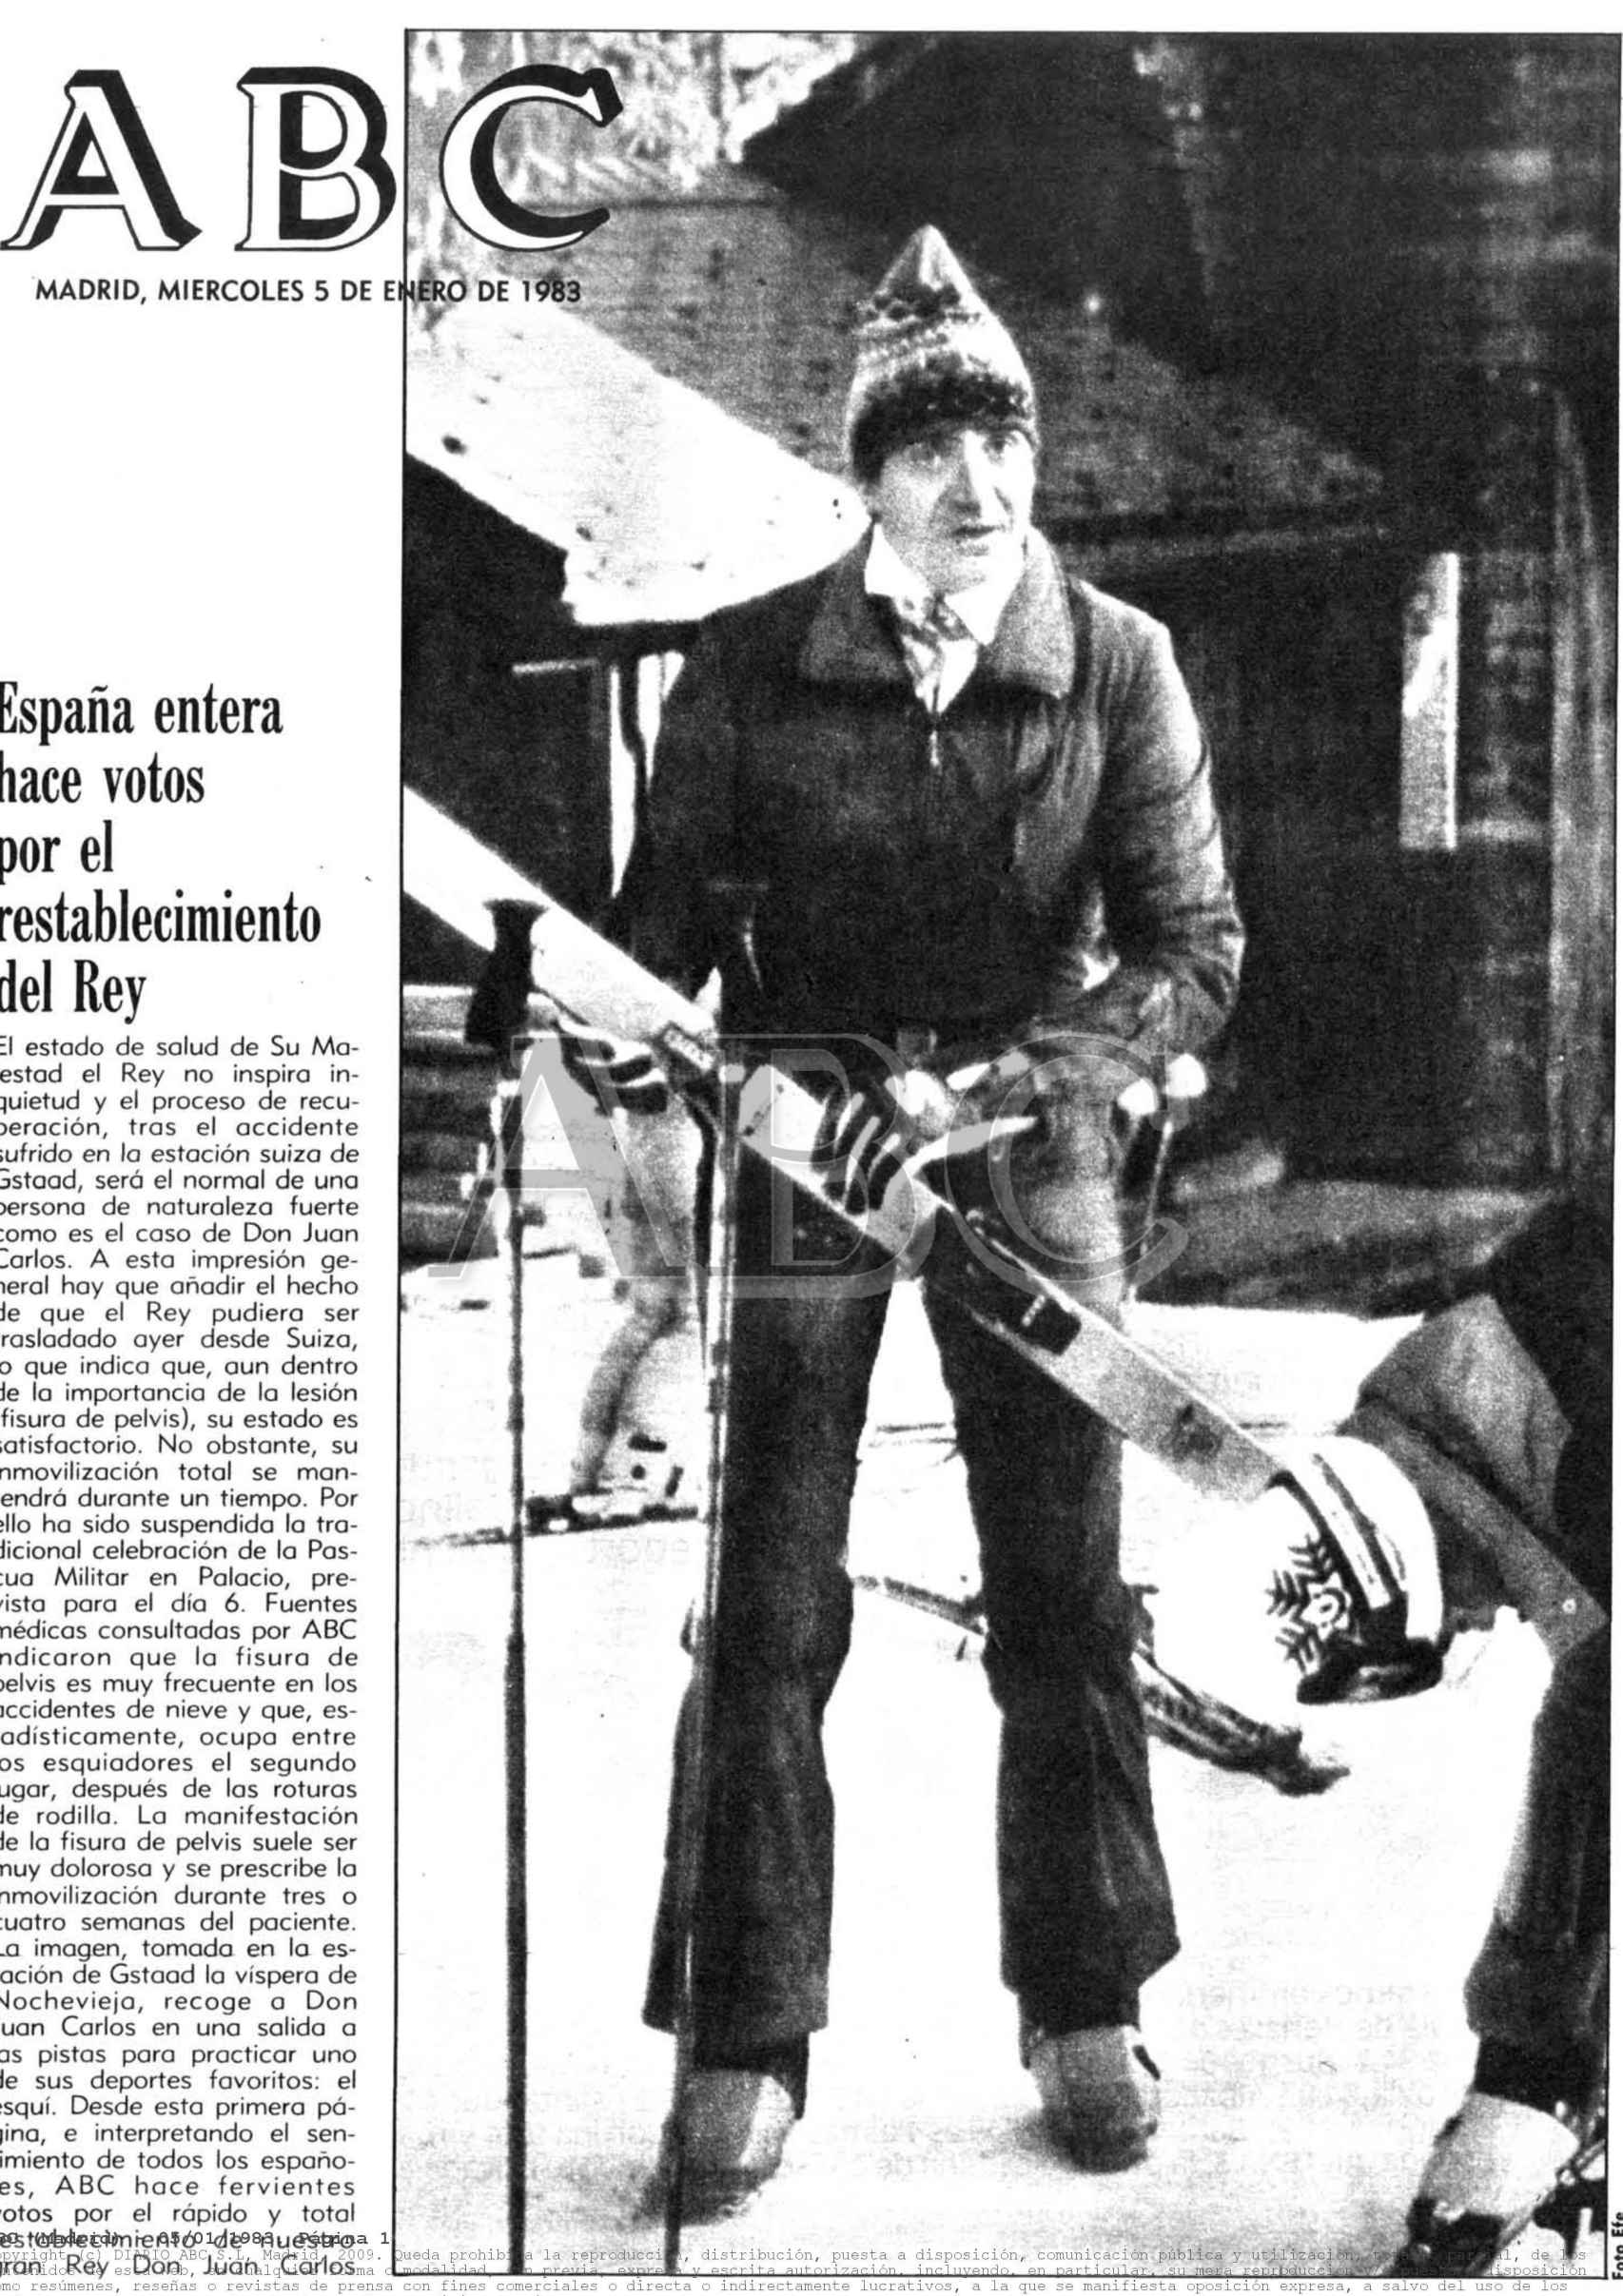 Portada del diario ABC el 5 de enero de 1983 tras el incidente de Juan Carlos en la estación suiza de Gstaad